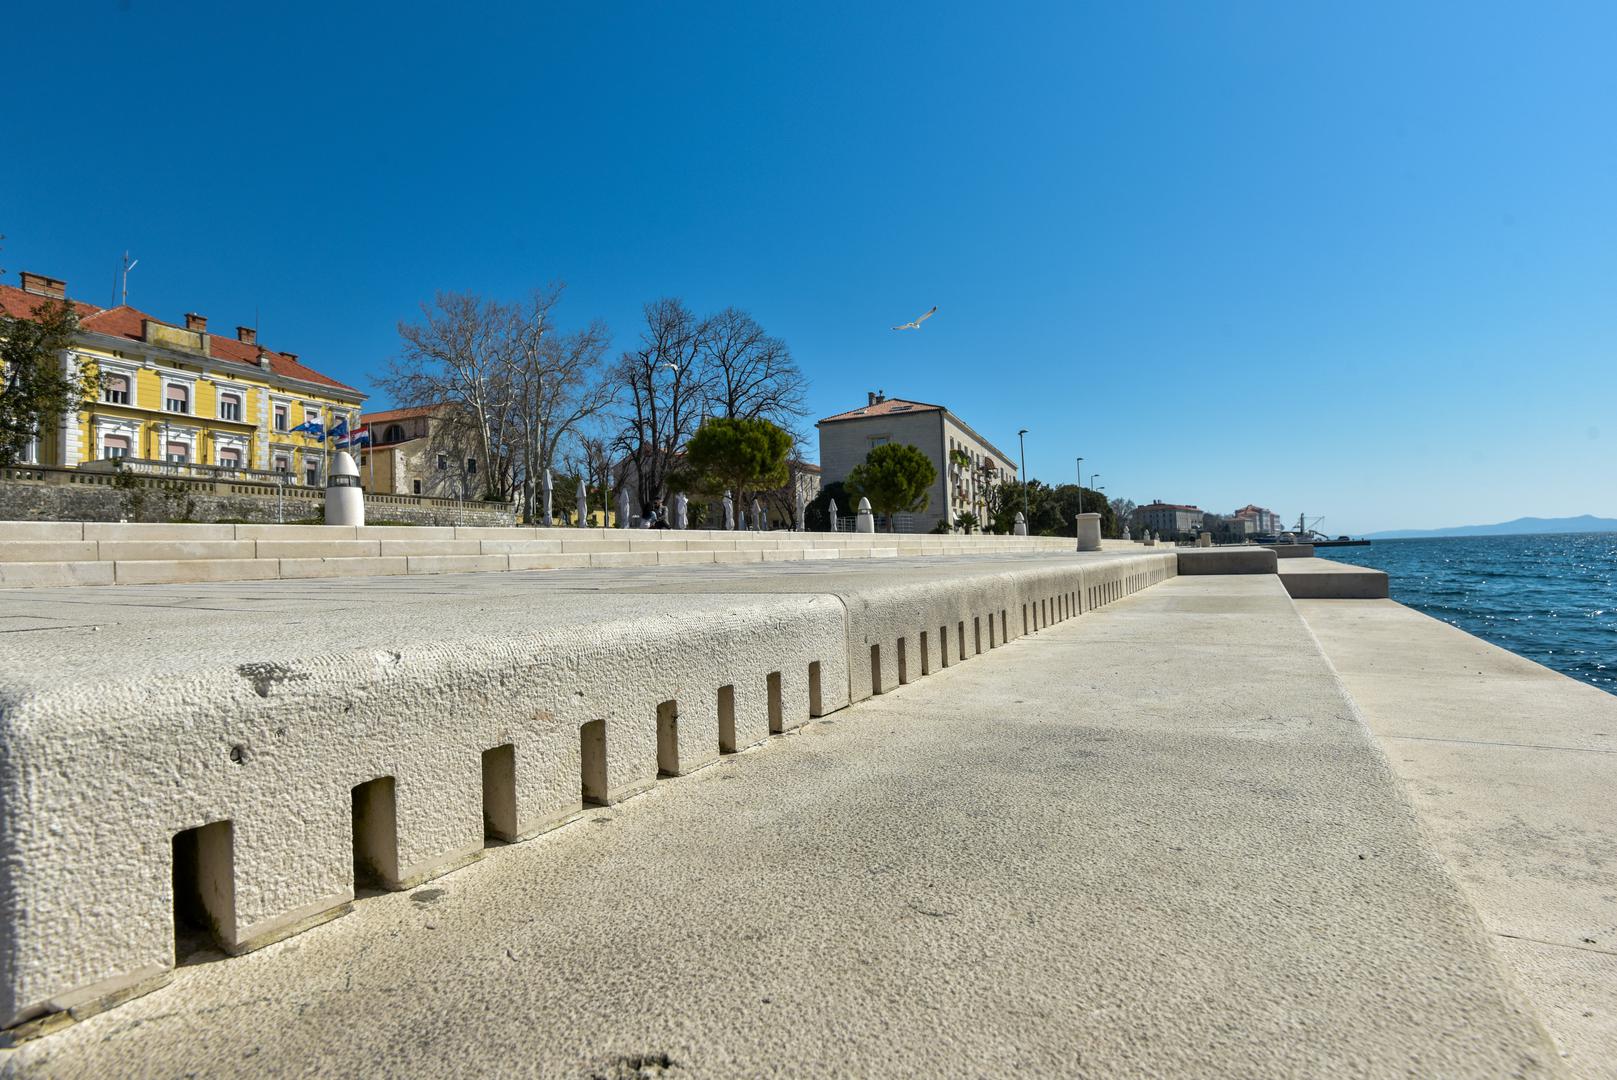 8. Zadar ima prve morske orgulje na svijetu koje stvaraju glazbu pokretanu morskim valovima.